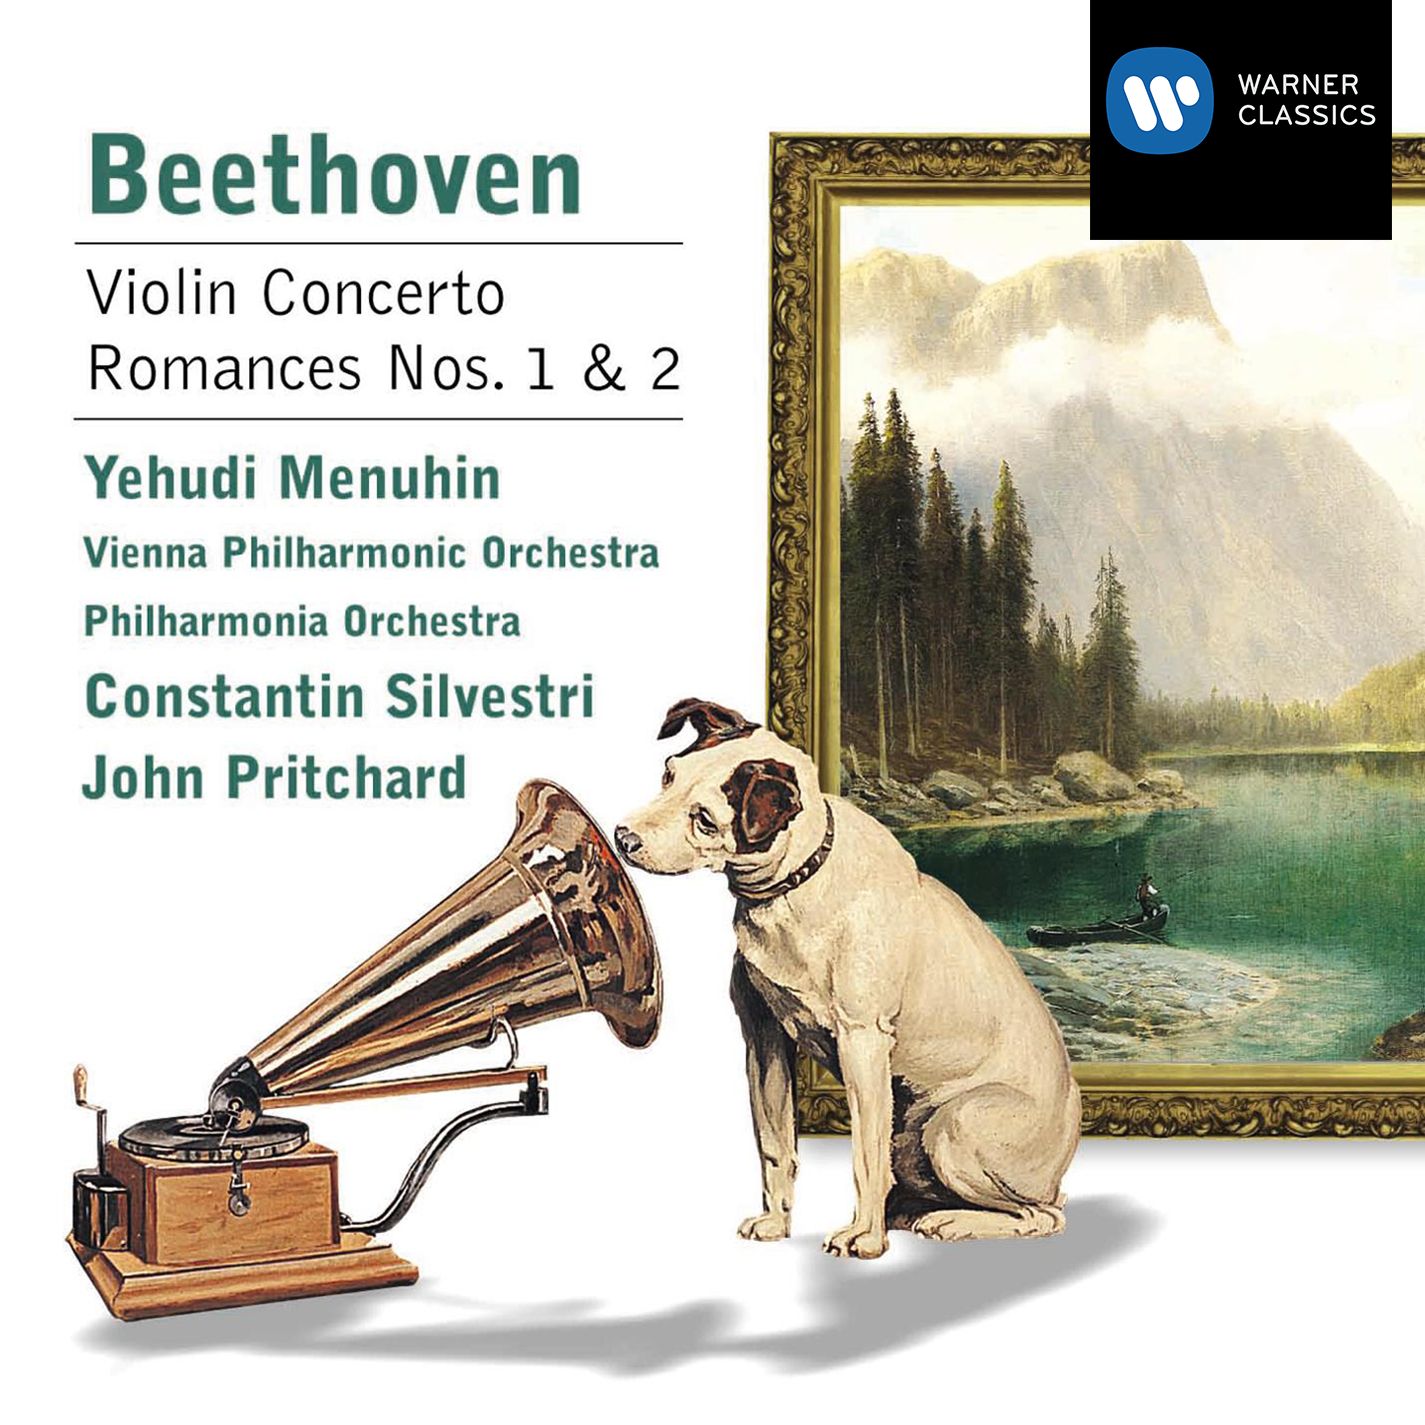 Beethoven: Violin Concerto - Romances Nos.1 & 2